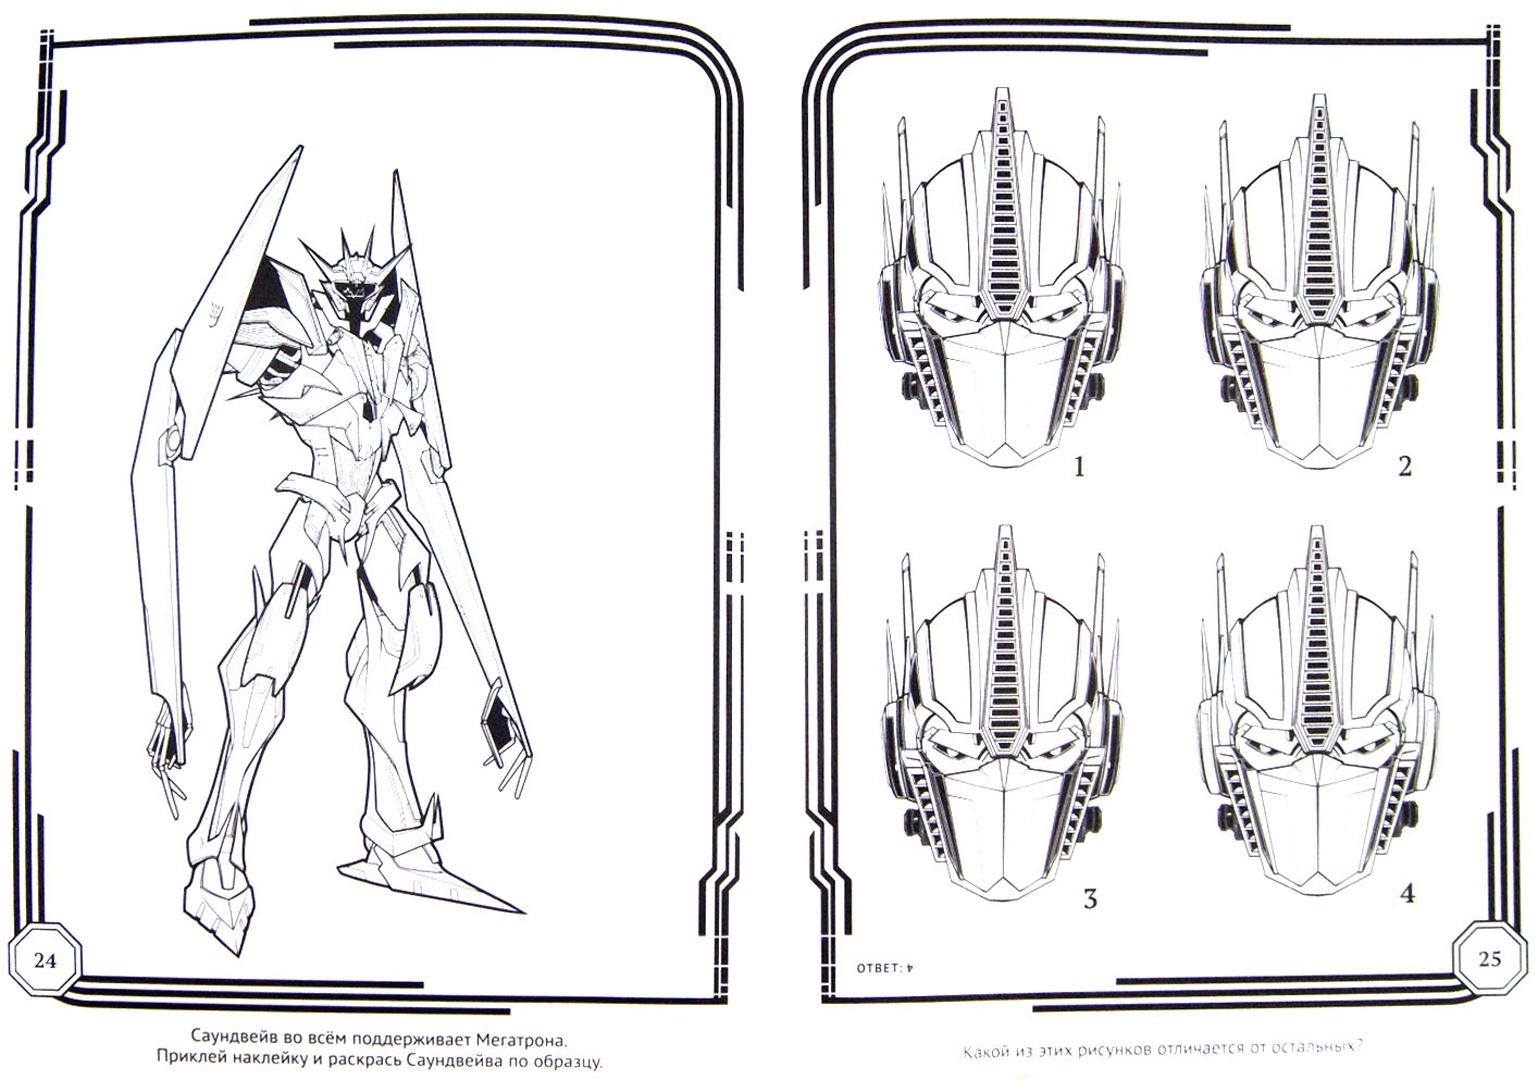 Иллюстрация 1 из 6 для Трансформеры Прайм. Раскрась, наклей и отгадай (№1401) | Лабиринт - книги. Источник: Лабиринт